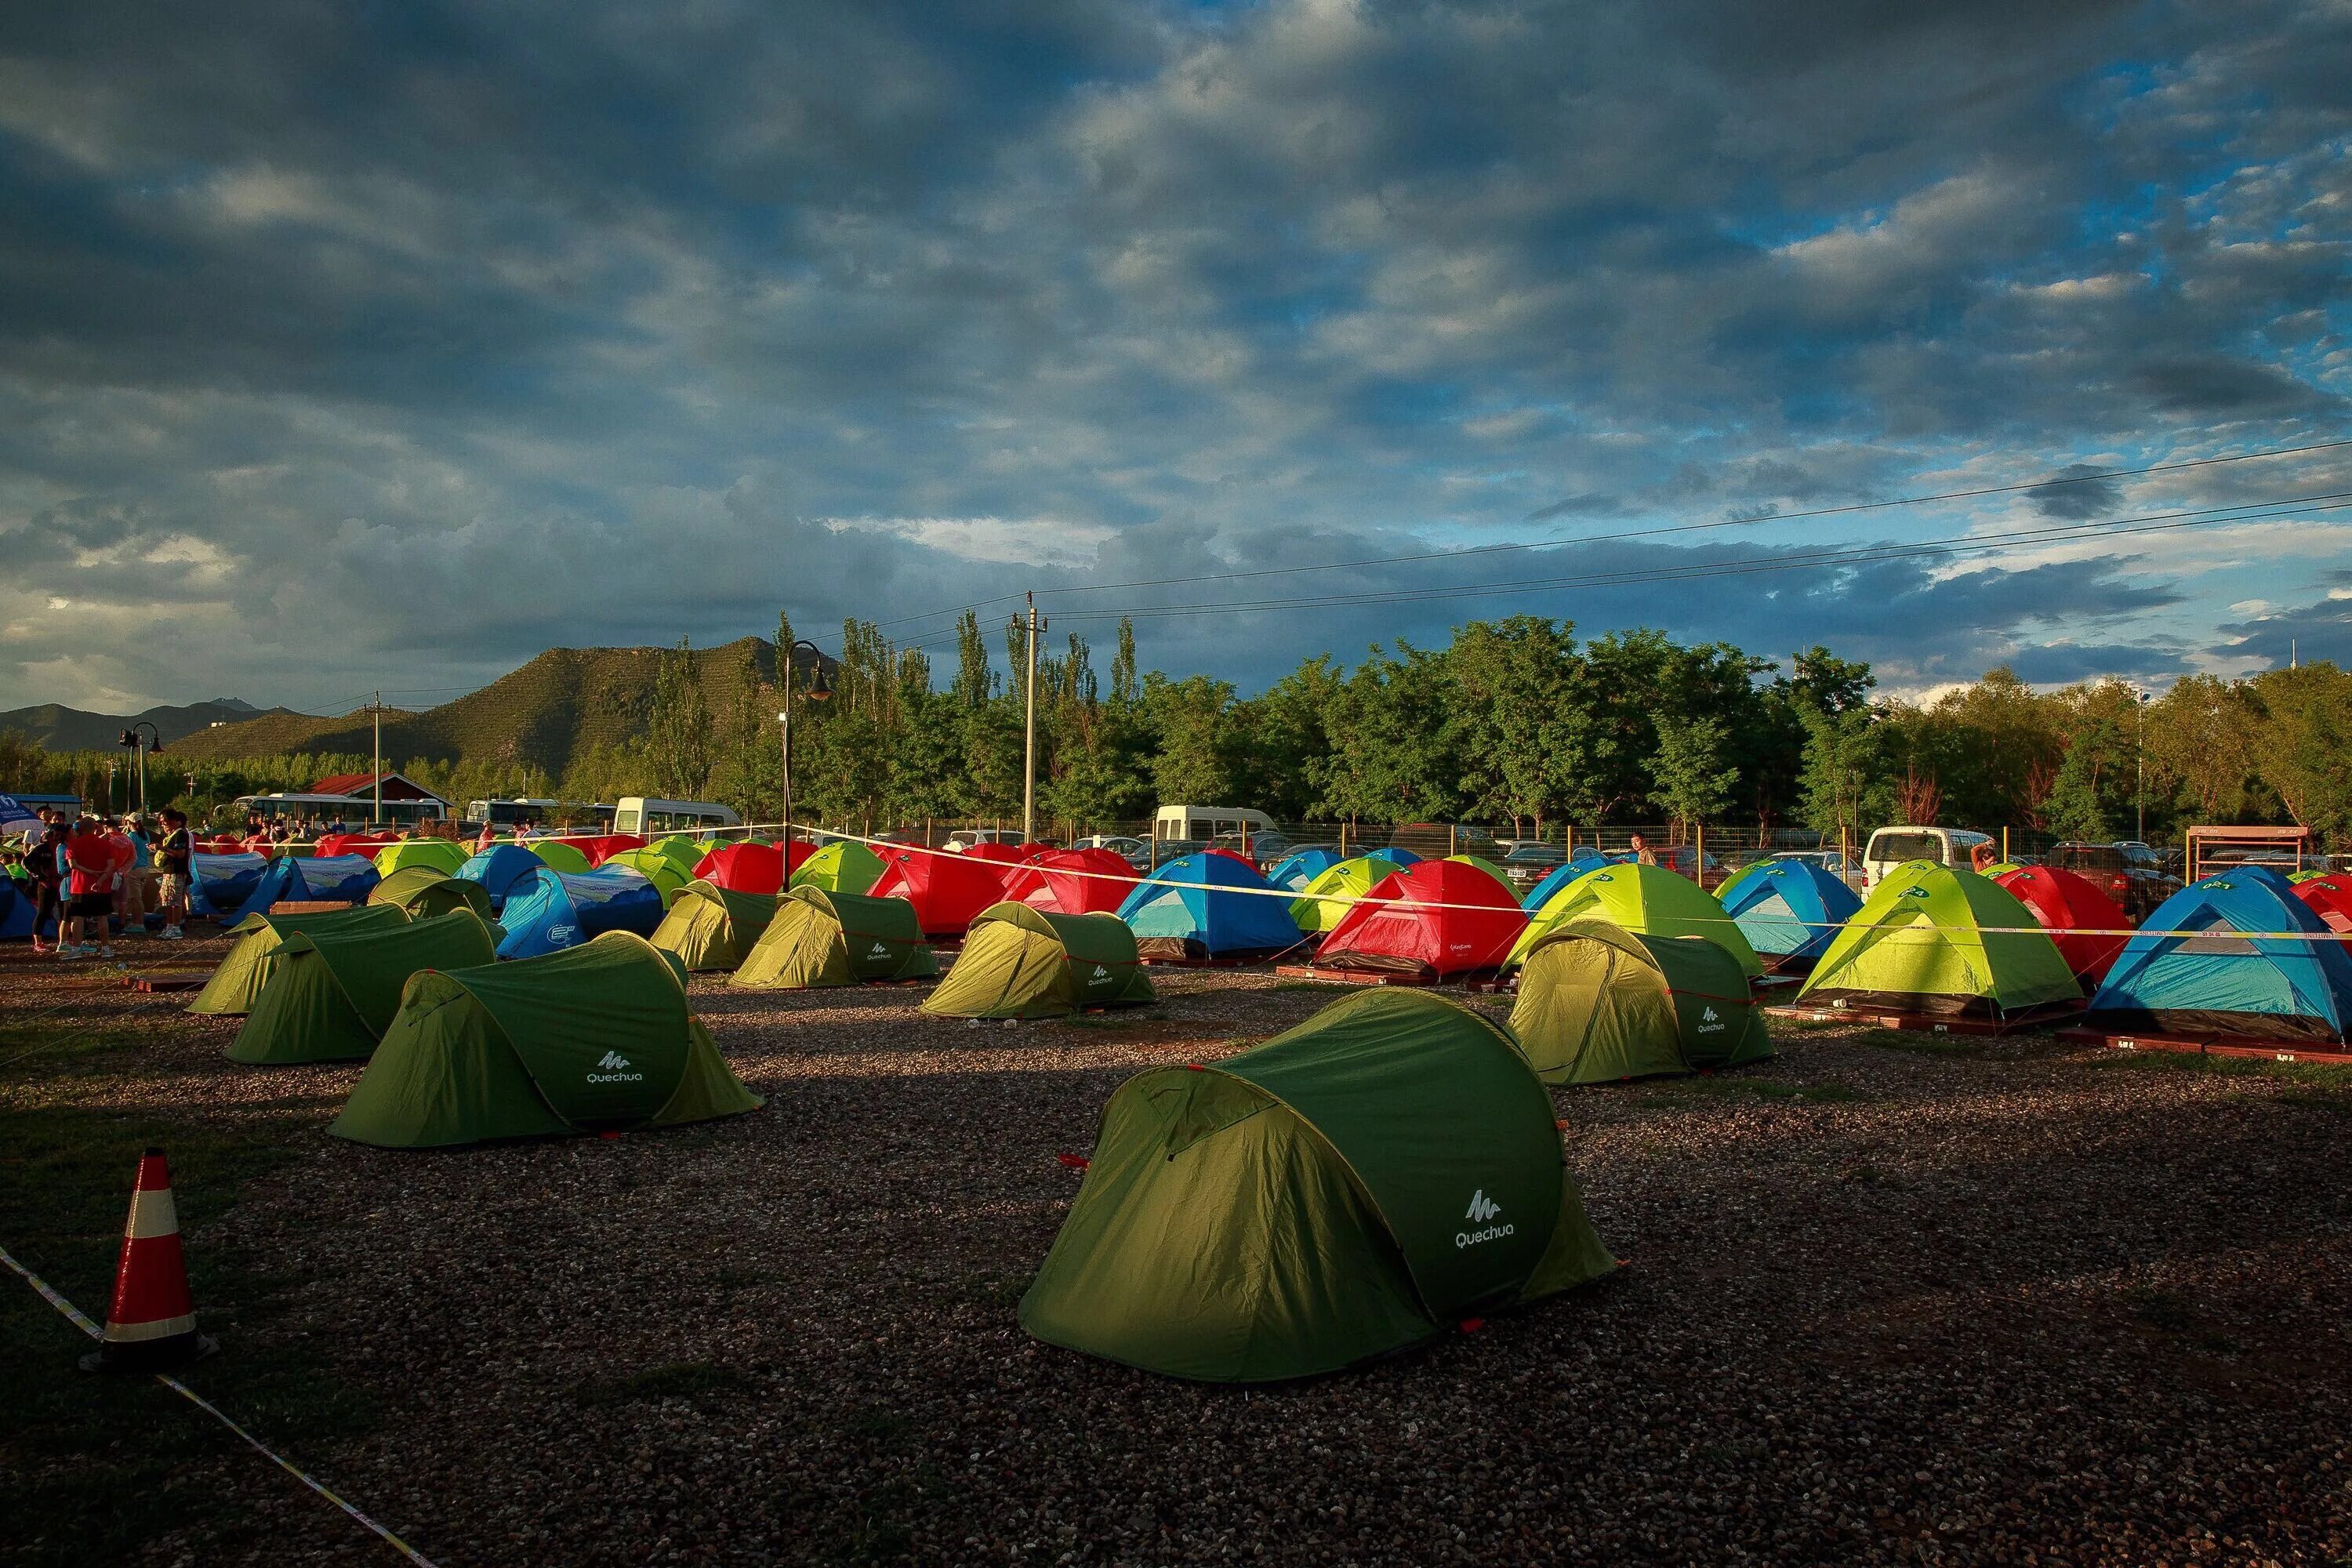 Camping rus. Палаточный лагерь Камлак. Салаирские плесы палаточный городок. Лагерь с палатками. Лагерь из палаток.